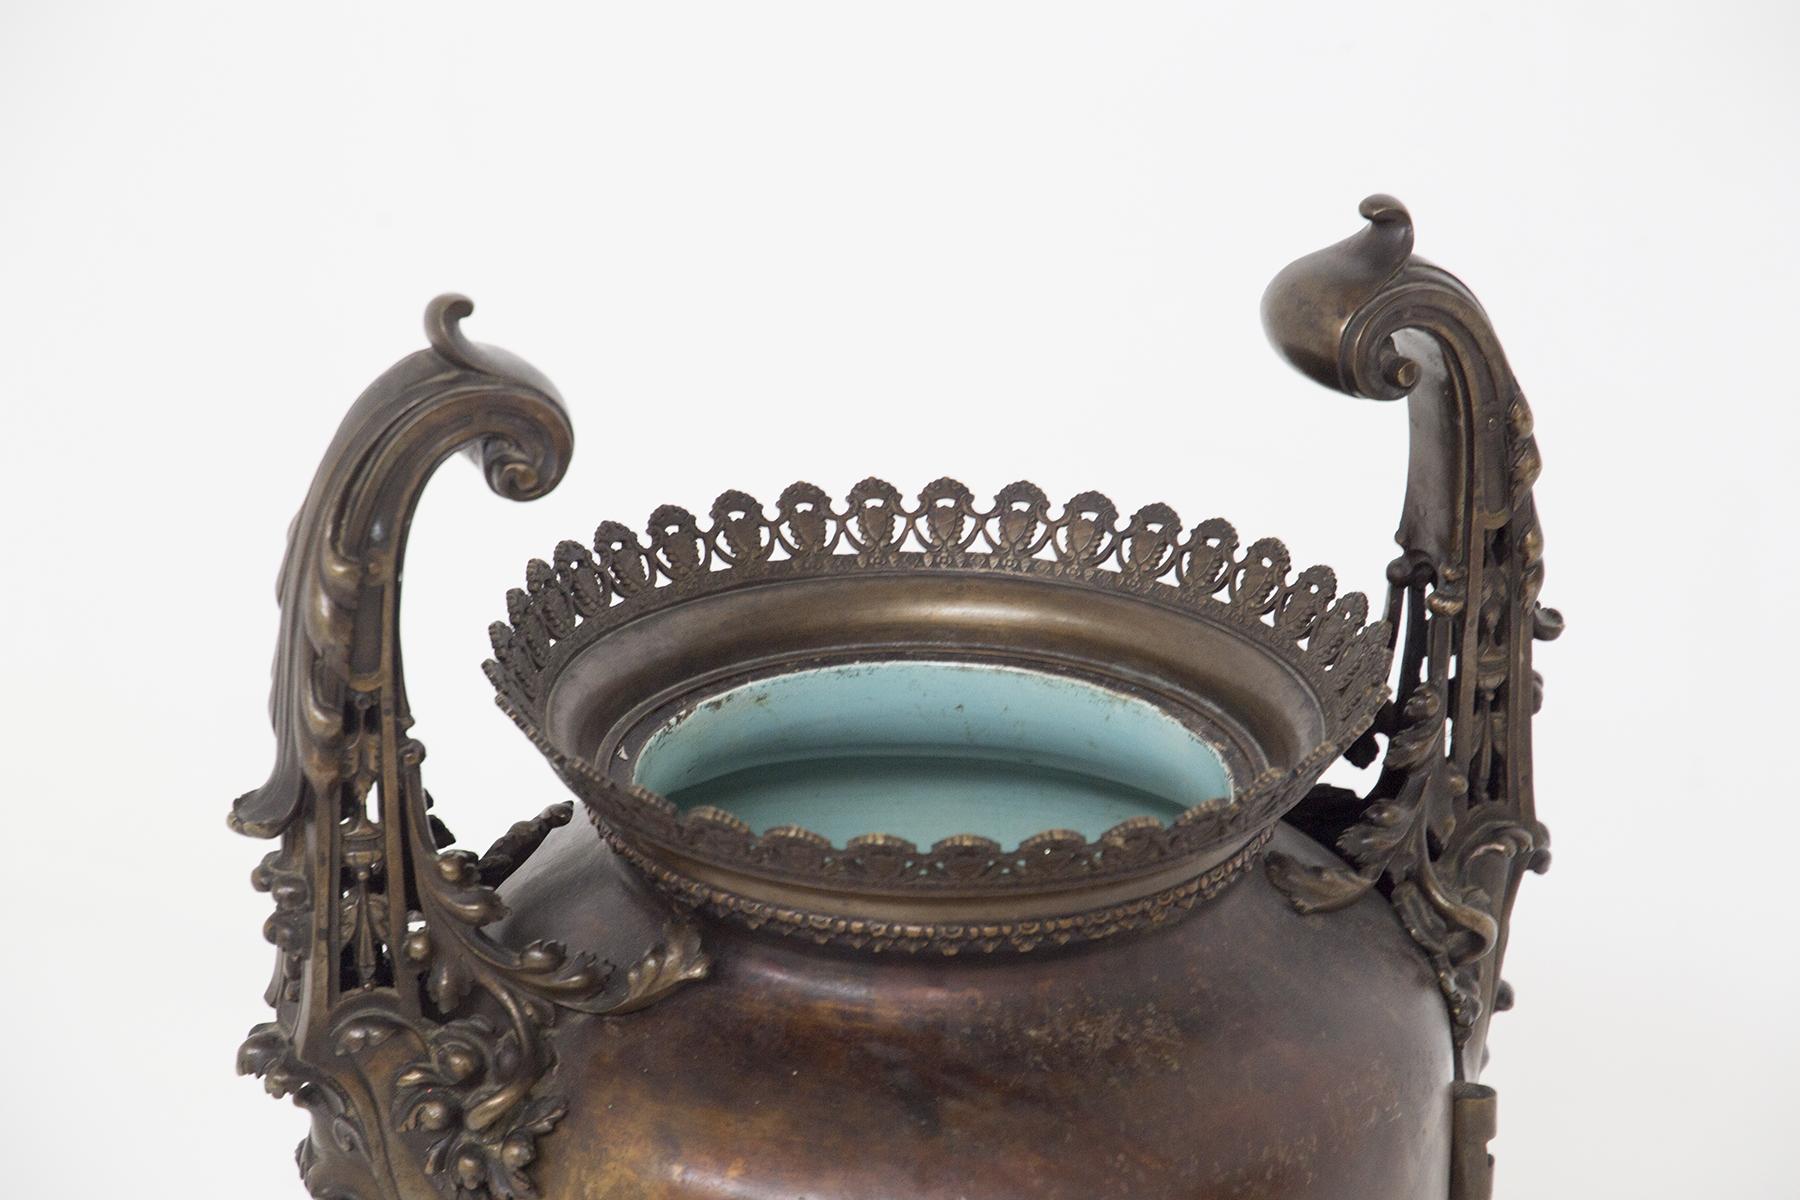 Grand vase en bronze peint Art Nouveau du début des années 1900, belle fabrication italienne.
Le vase a une base ronde avec quatre pieds épais et sinueux, qui rappellent ceux des vieux poêles. Les quatre pieds sont décorés de façon grandiose : en